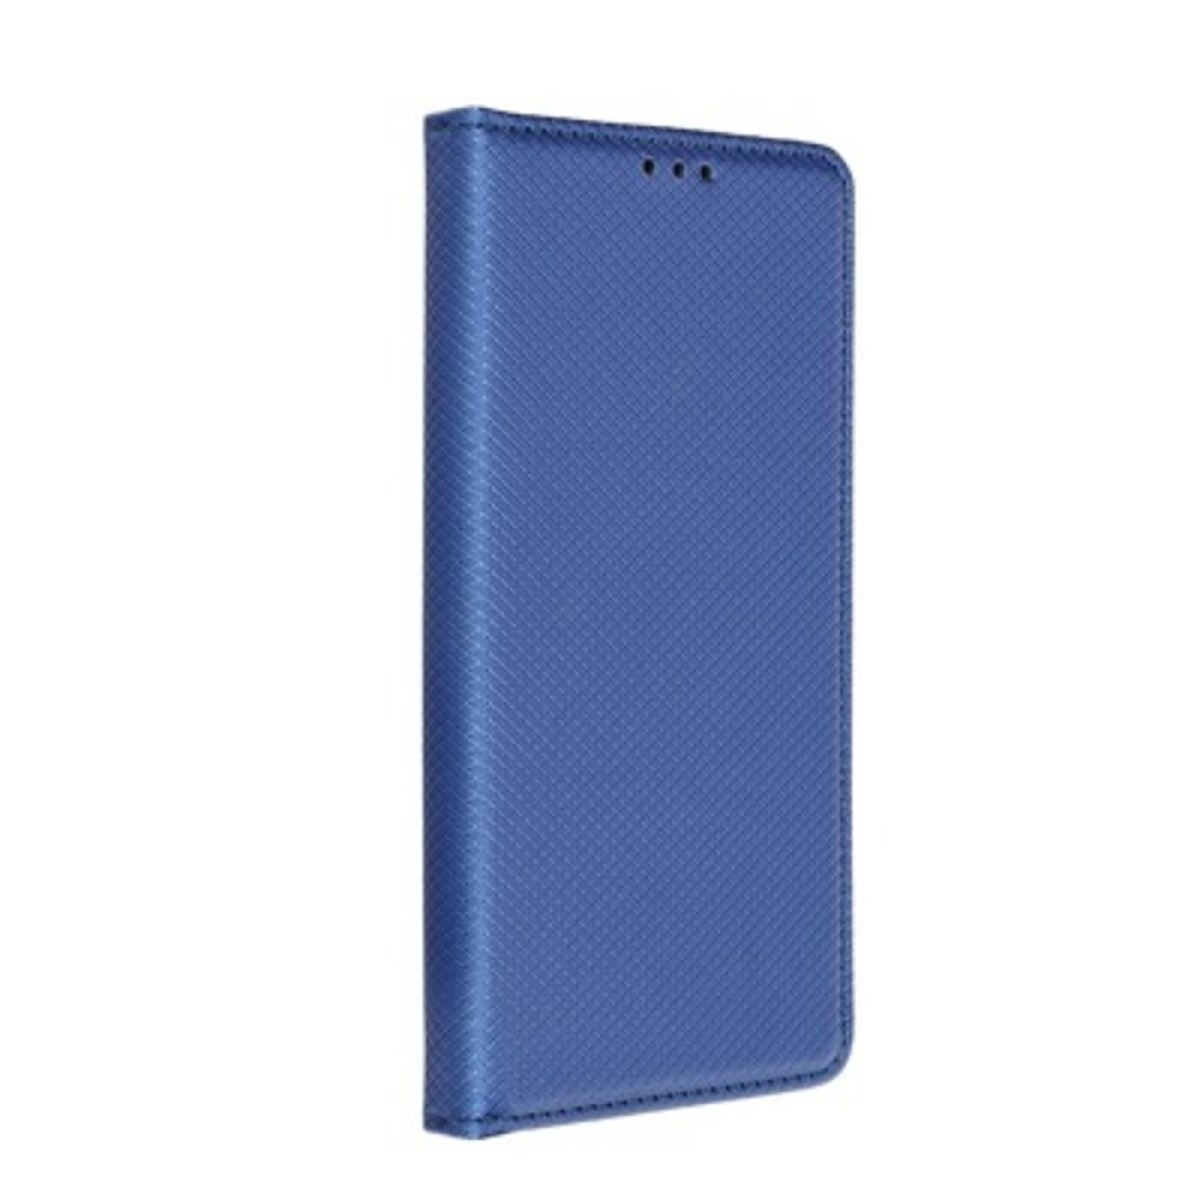 SM Smart Book Case Galaxy Xcover EDITION, Galaxy Xcover 5 - Galaxy dunkelblau, Xcover Blau Samsung, Bookcover, ENTERPRISE 5 5 